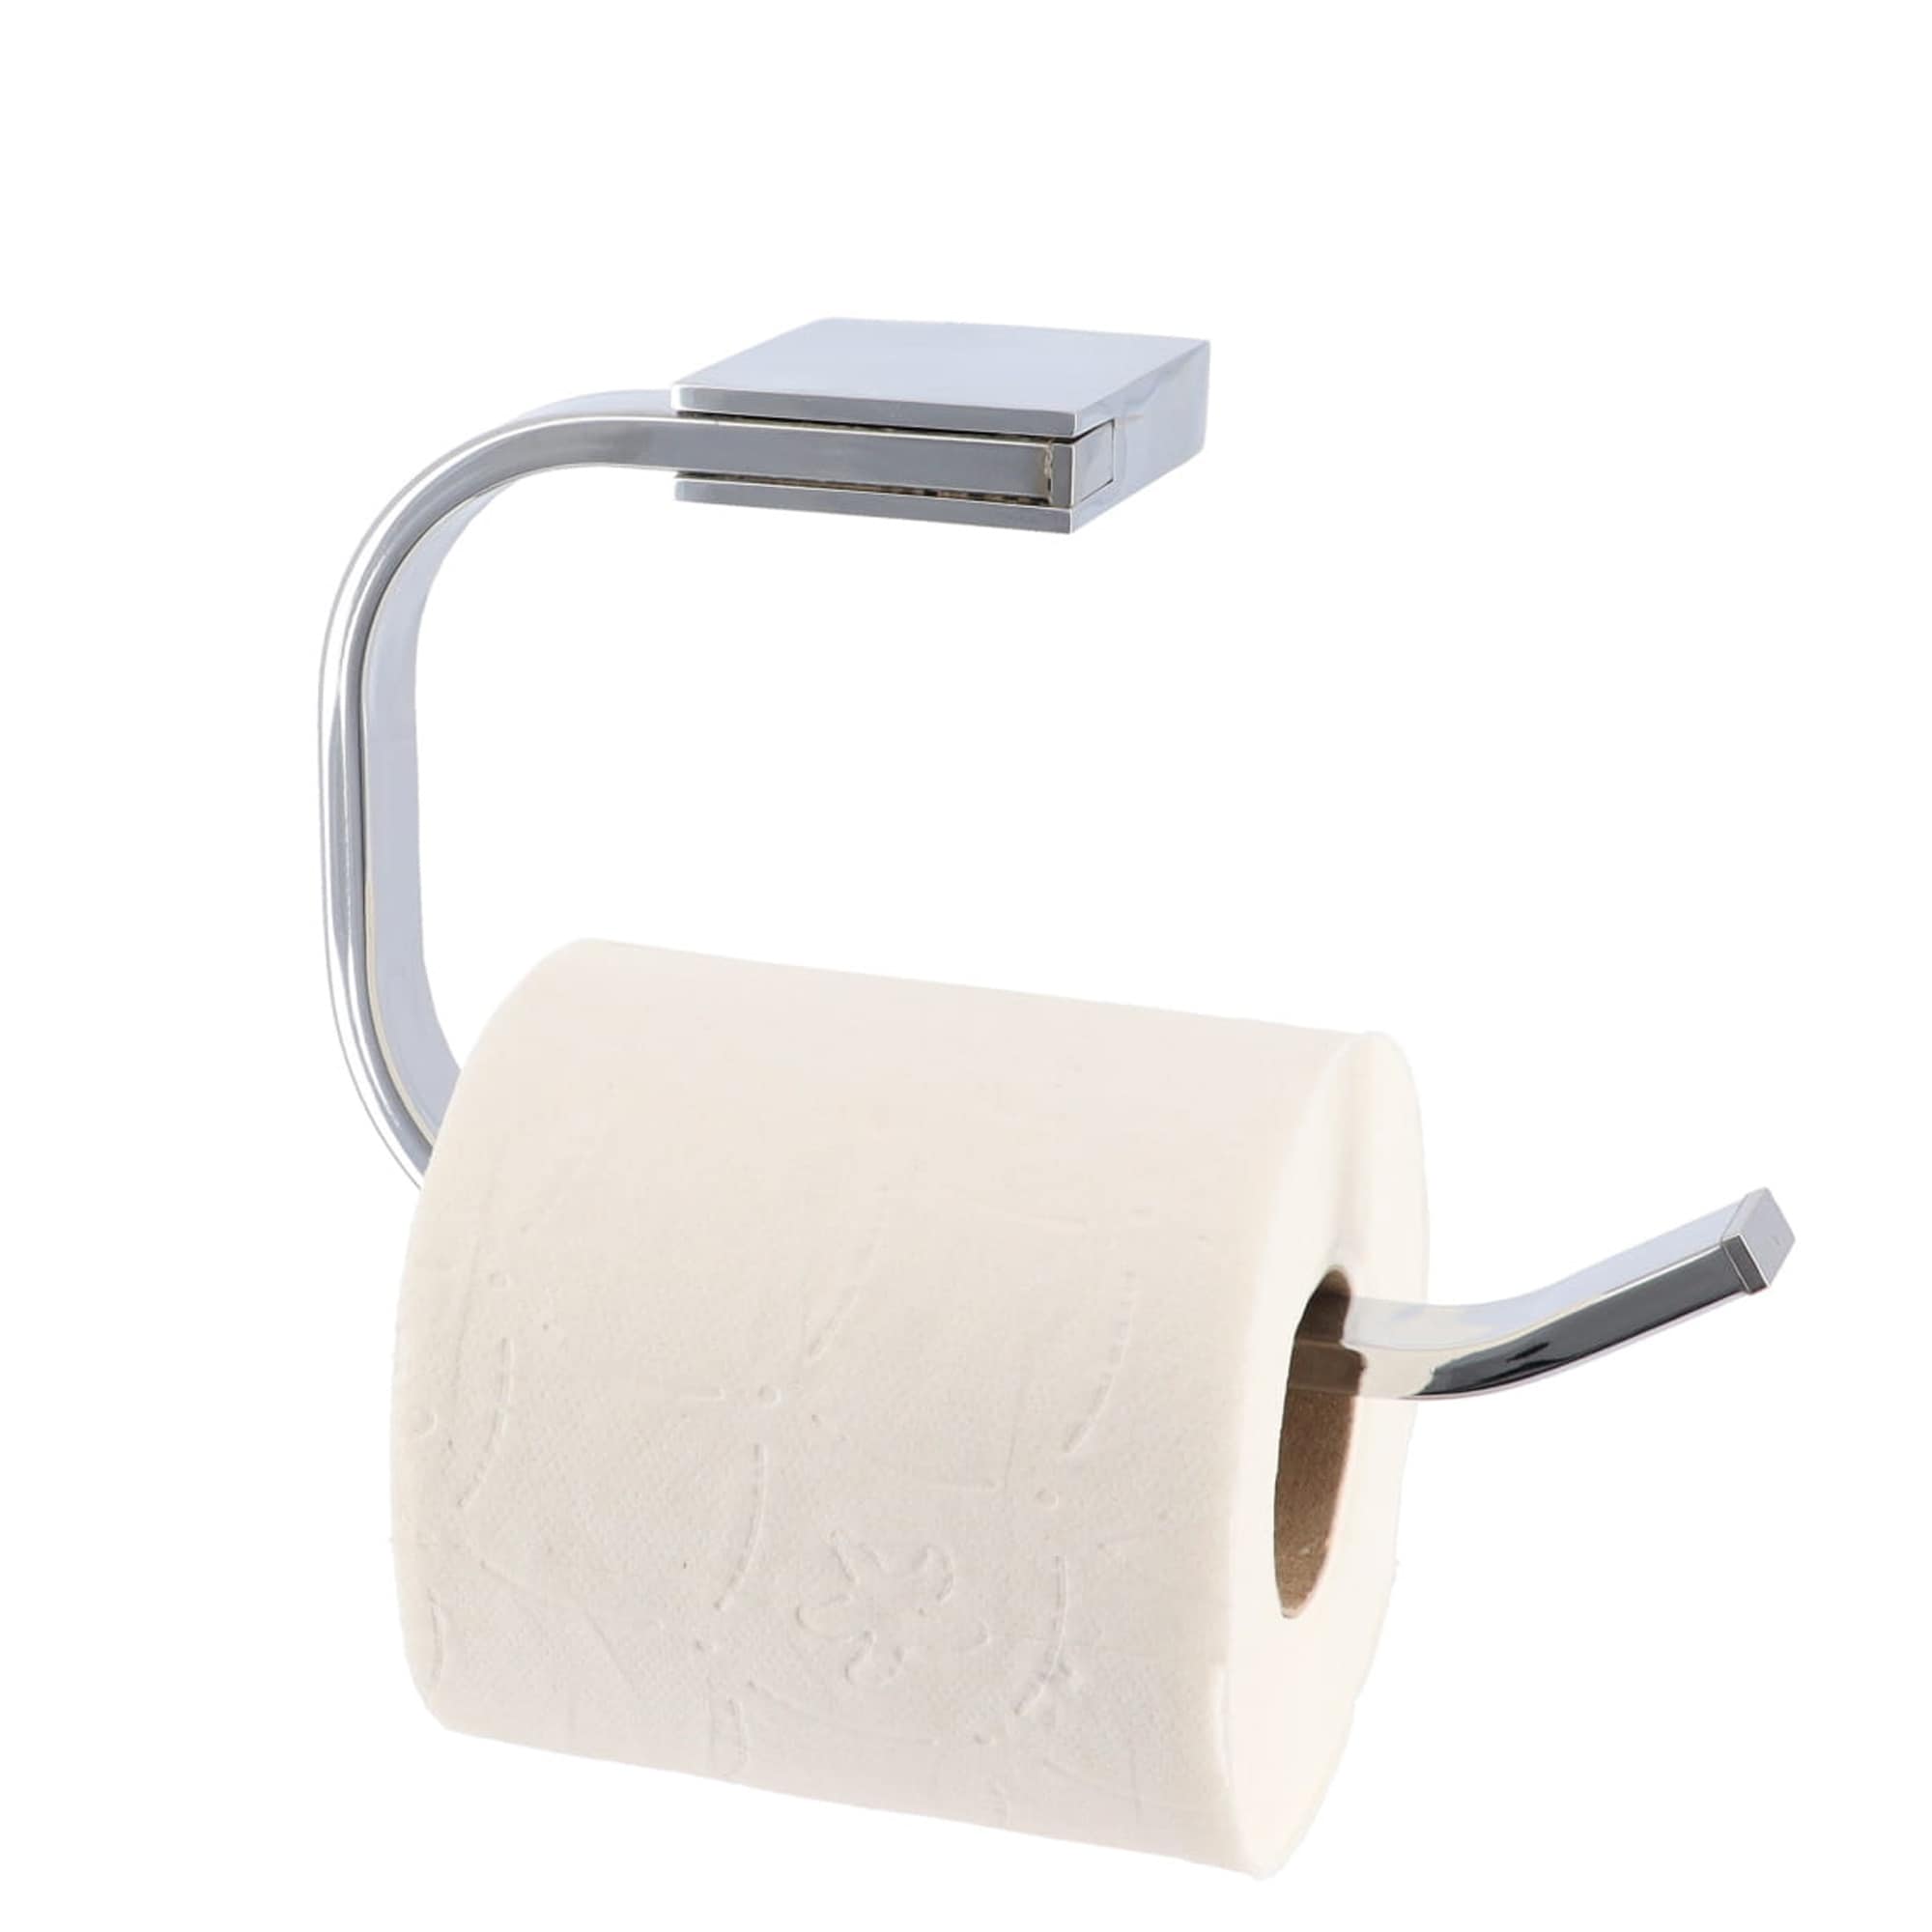 Spirich-2 in 1 Toilet Roll Paper Holder with Bathroom Storage